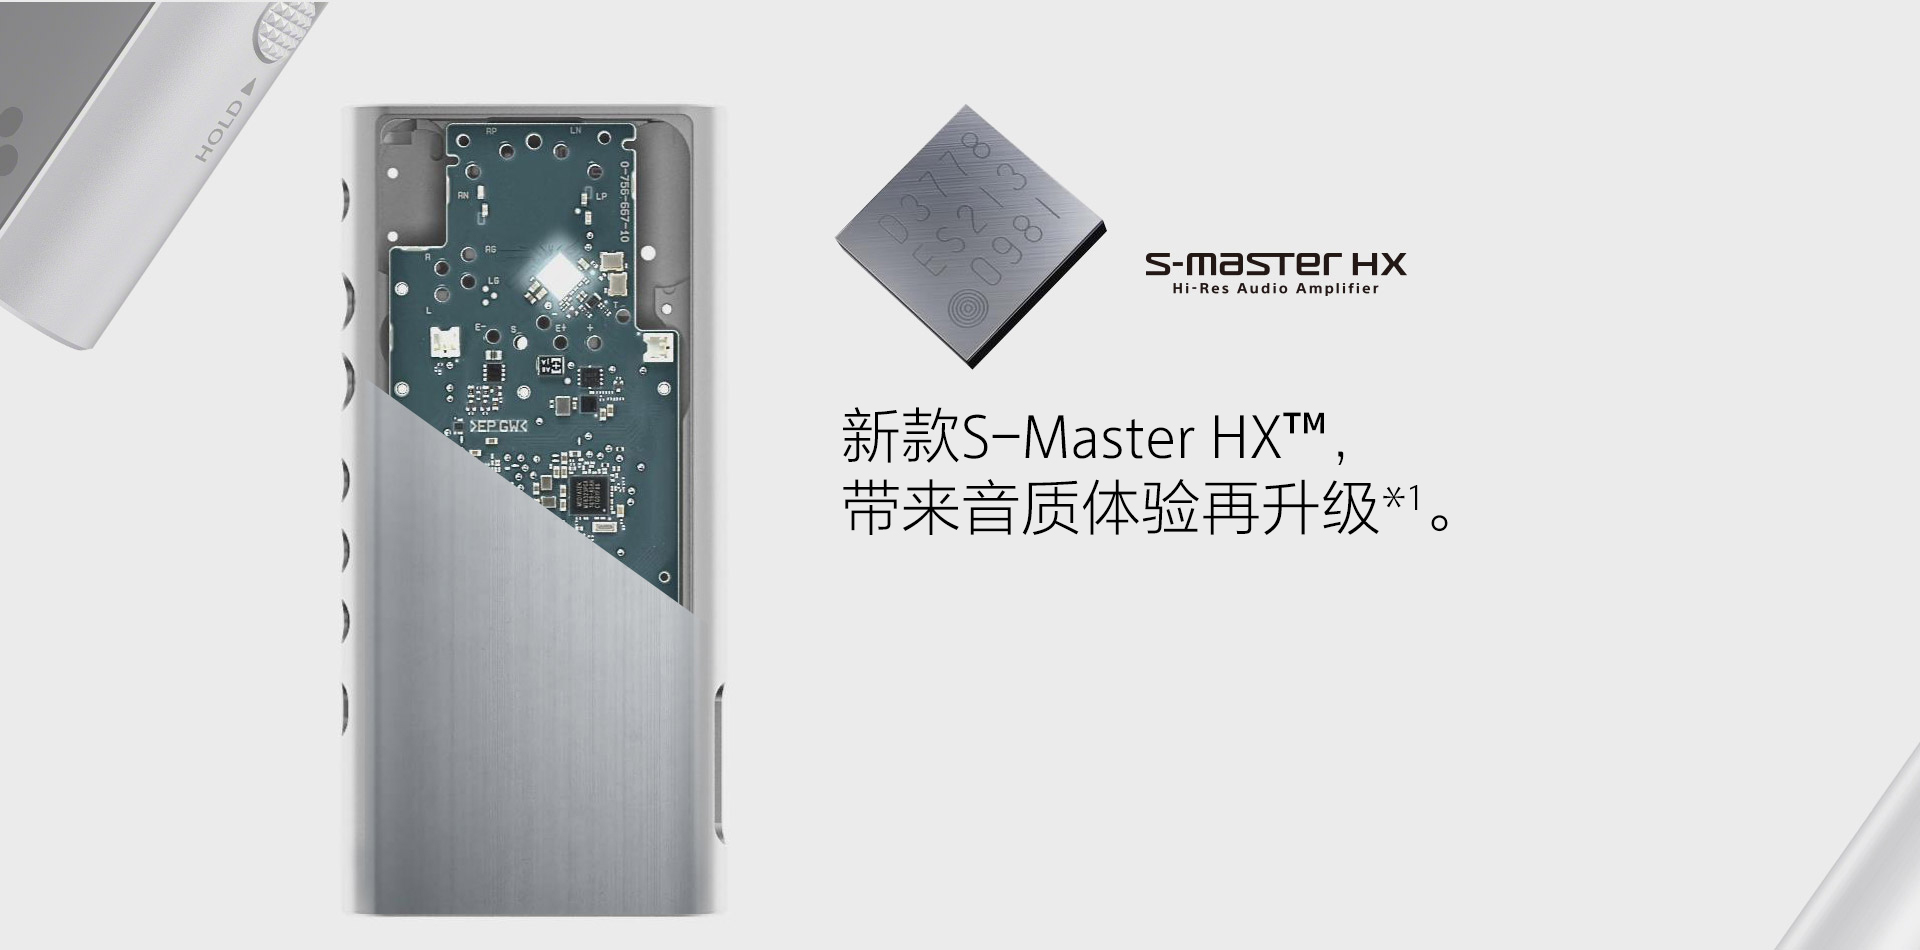 新款S-Master HX™带来音质体验再升级